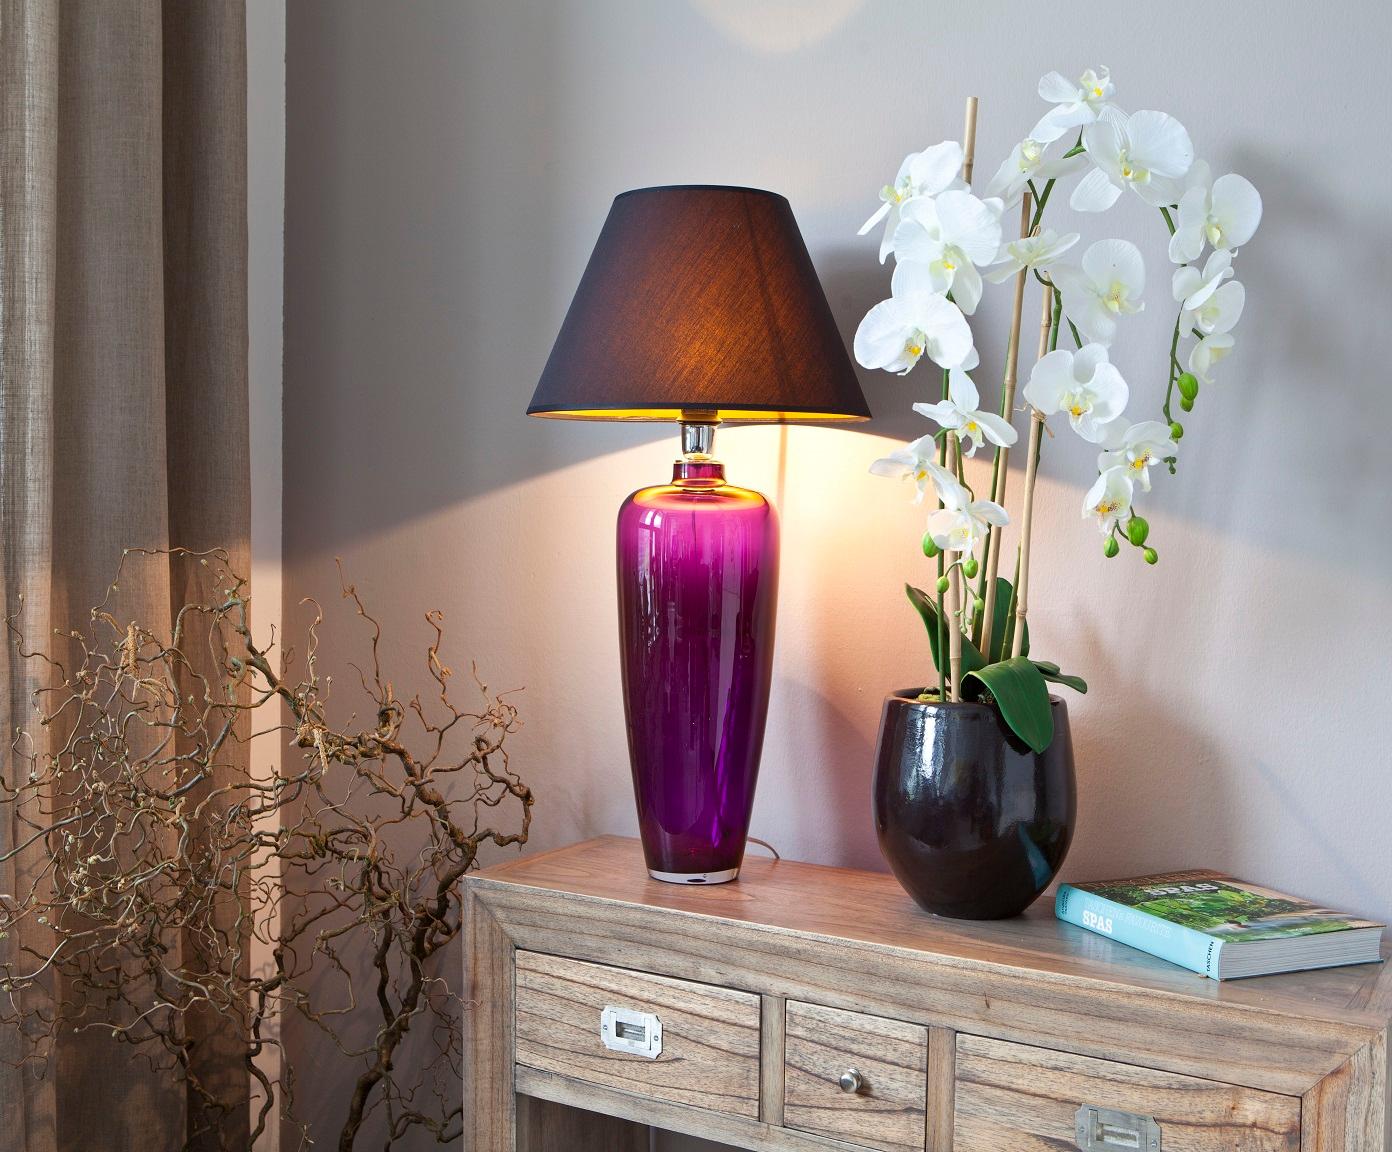 Glaslampe in strahlendem Violett als Eyecatcher #wohnzimmer #tischlampe ©Signature Home Collection